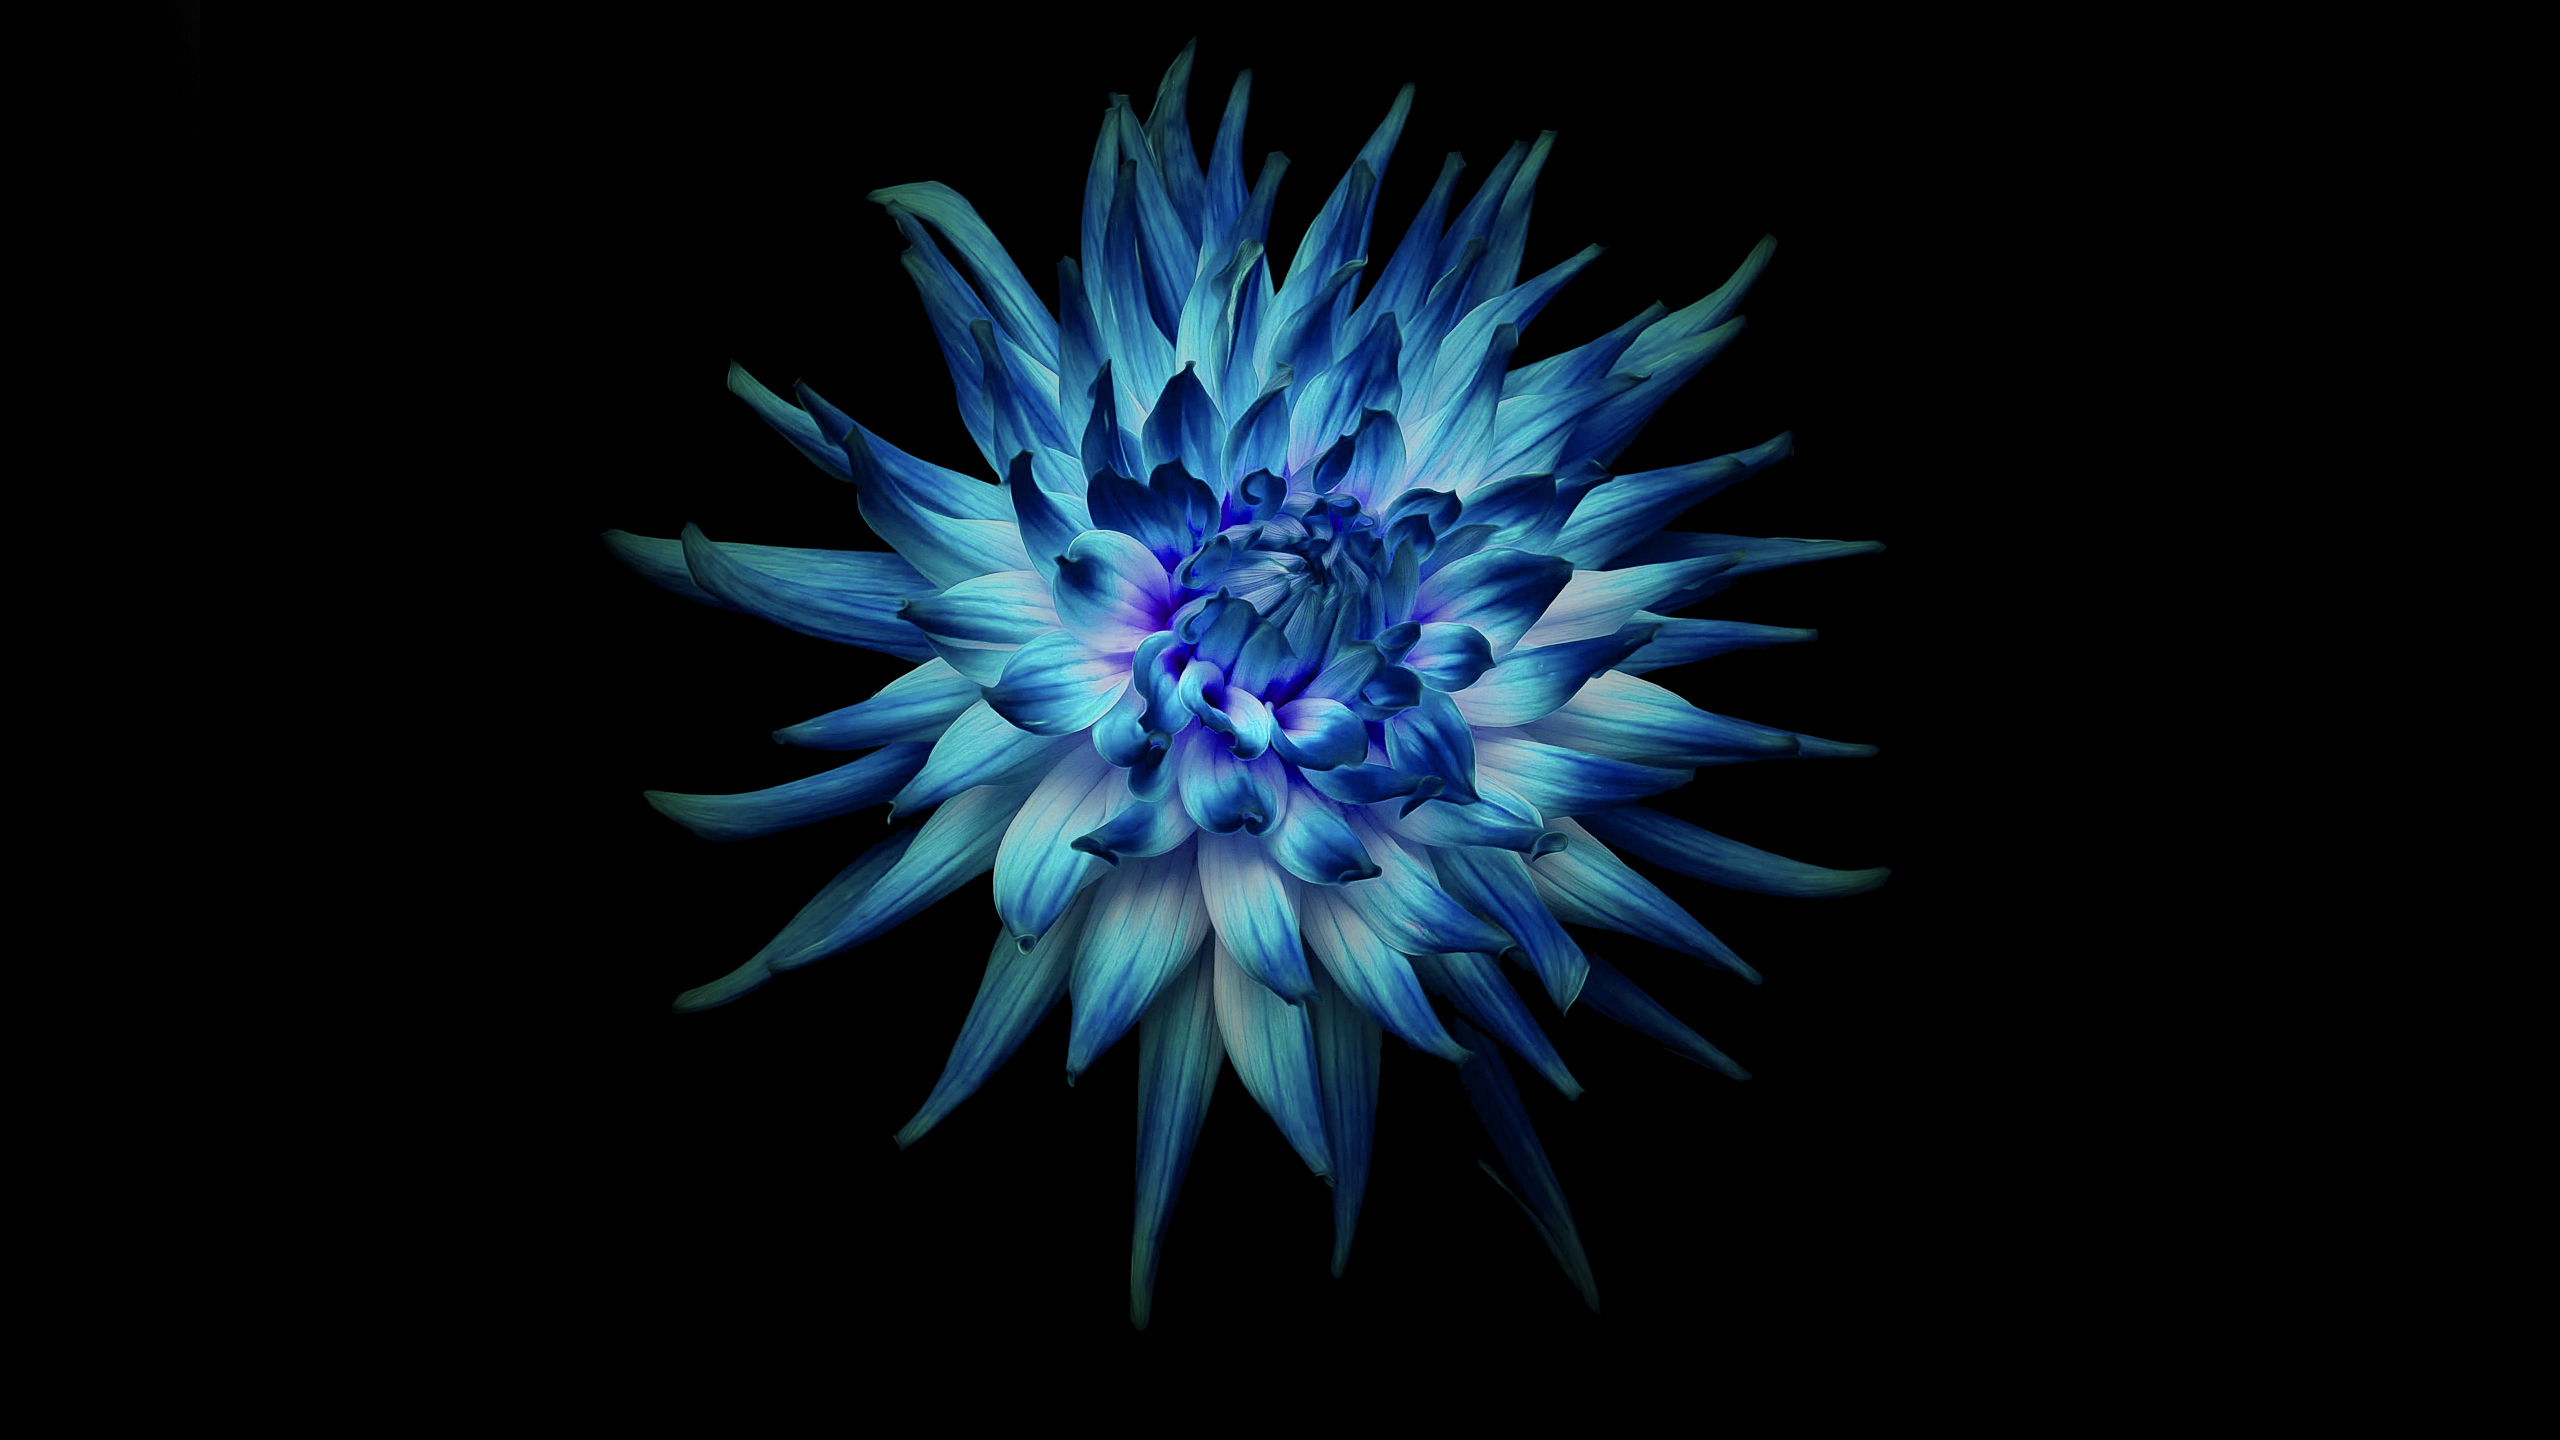 Flower in Dark background